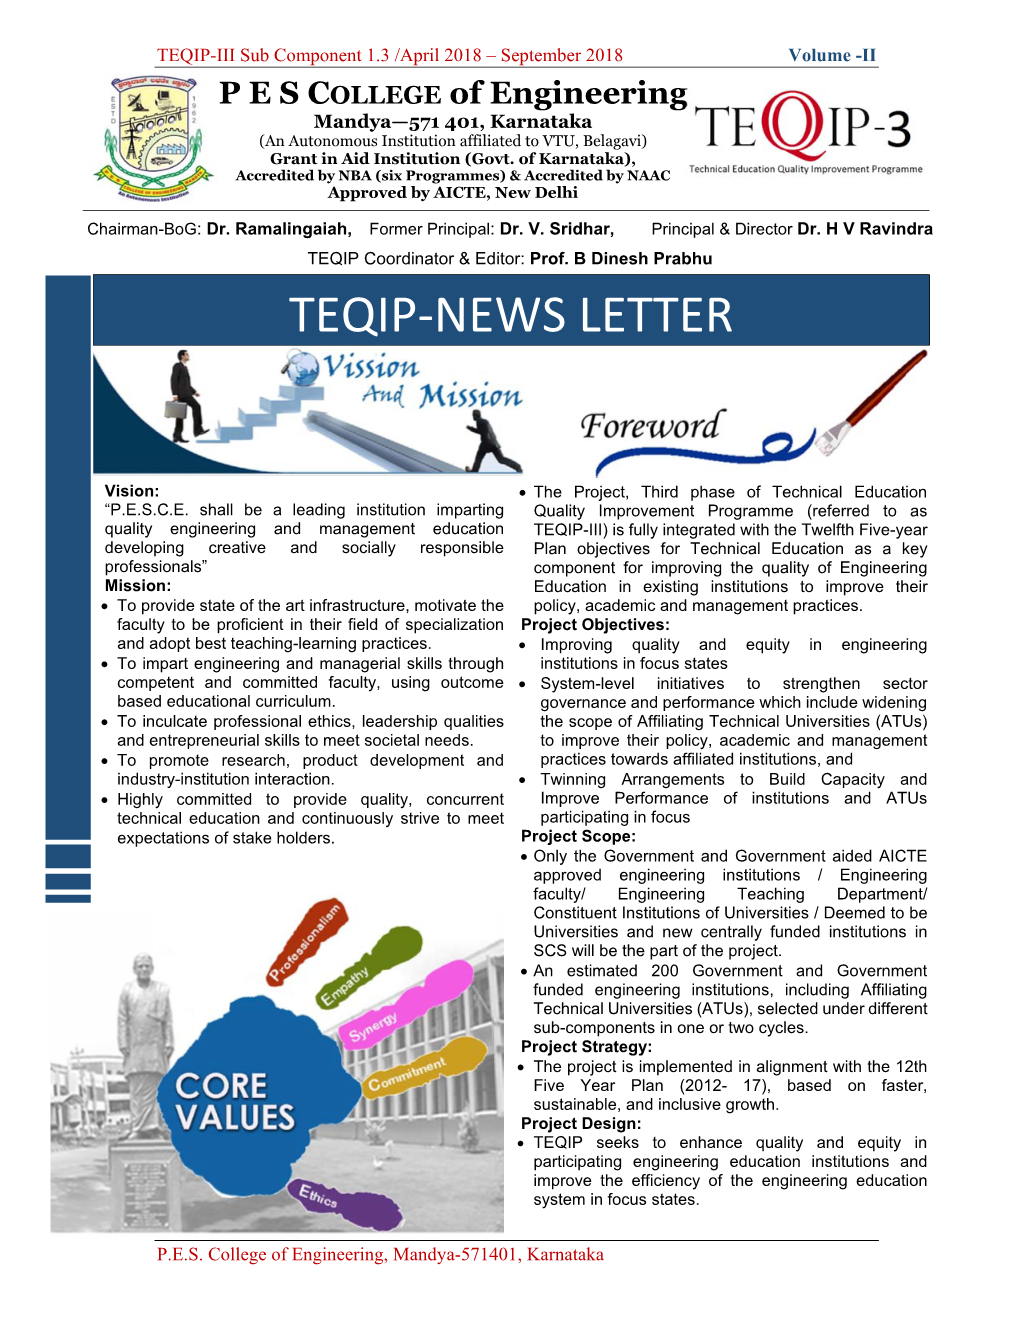 Teqip-News Letter